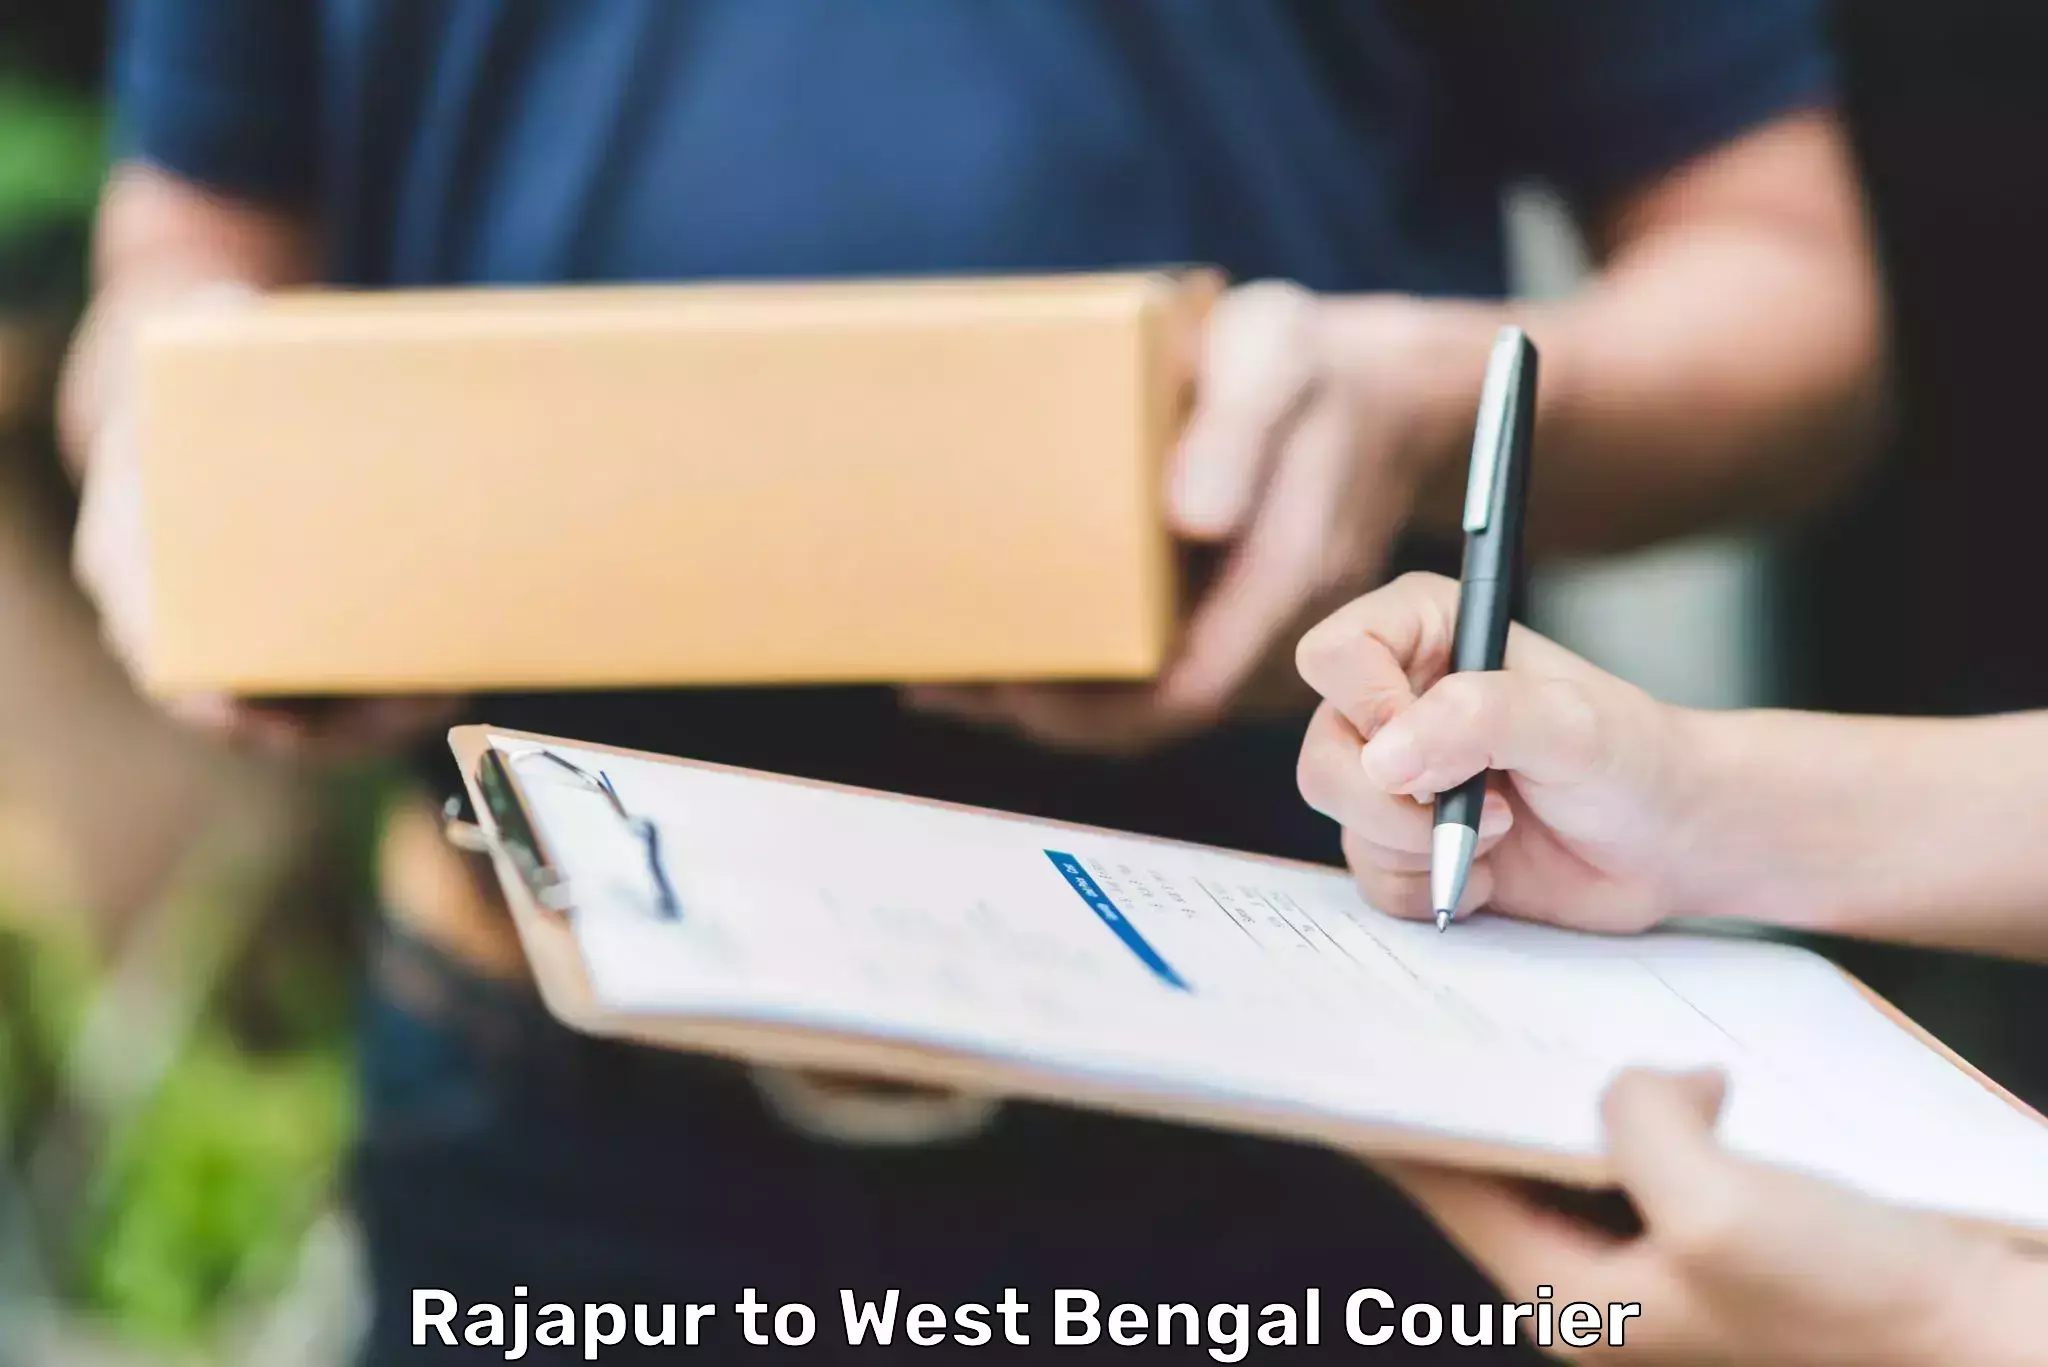 Courier service comparison Rajapur to Kanchrapara